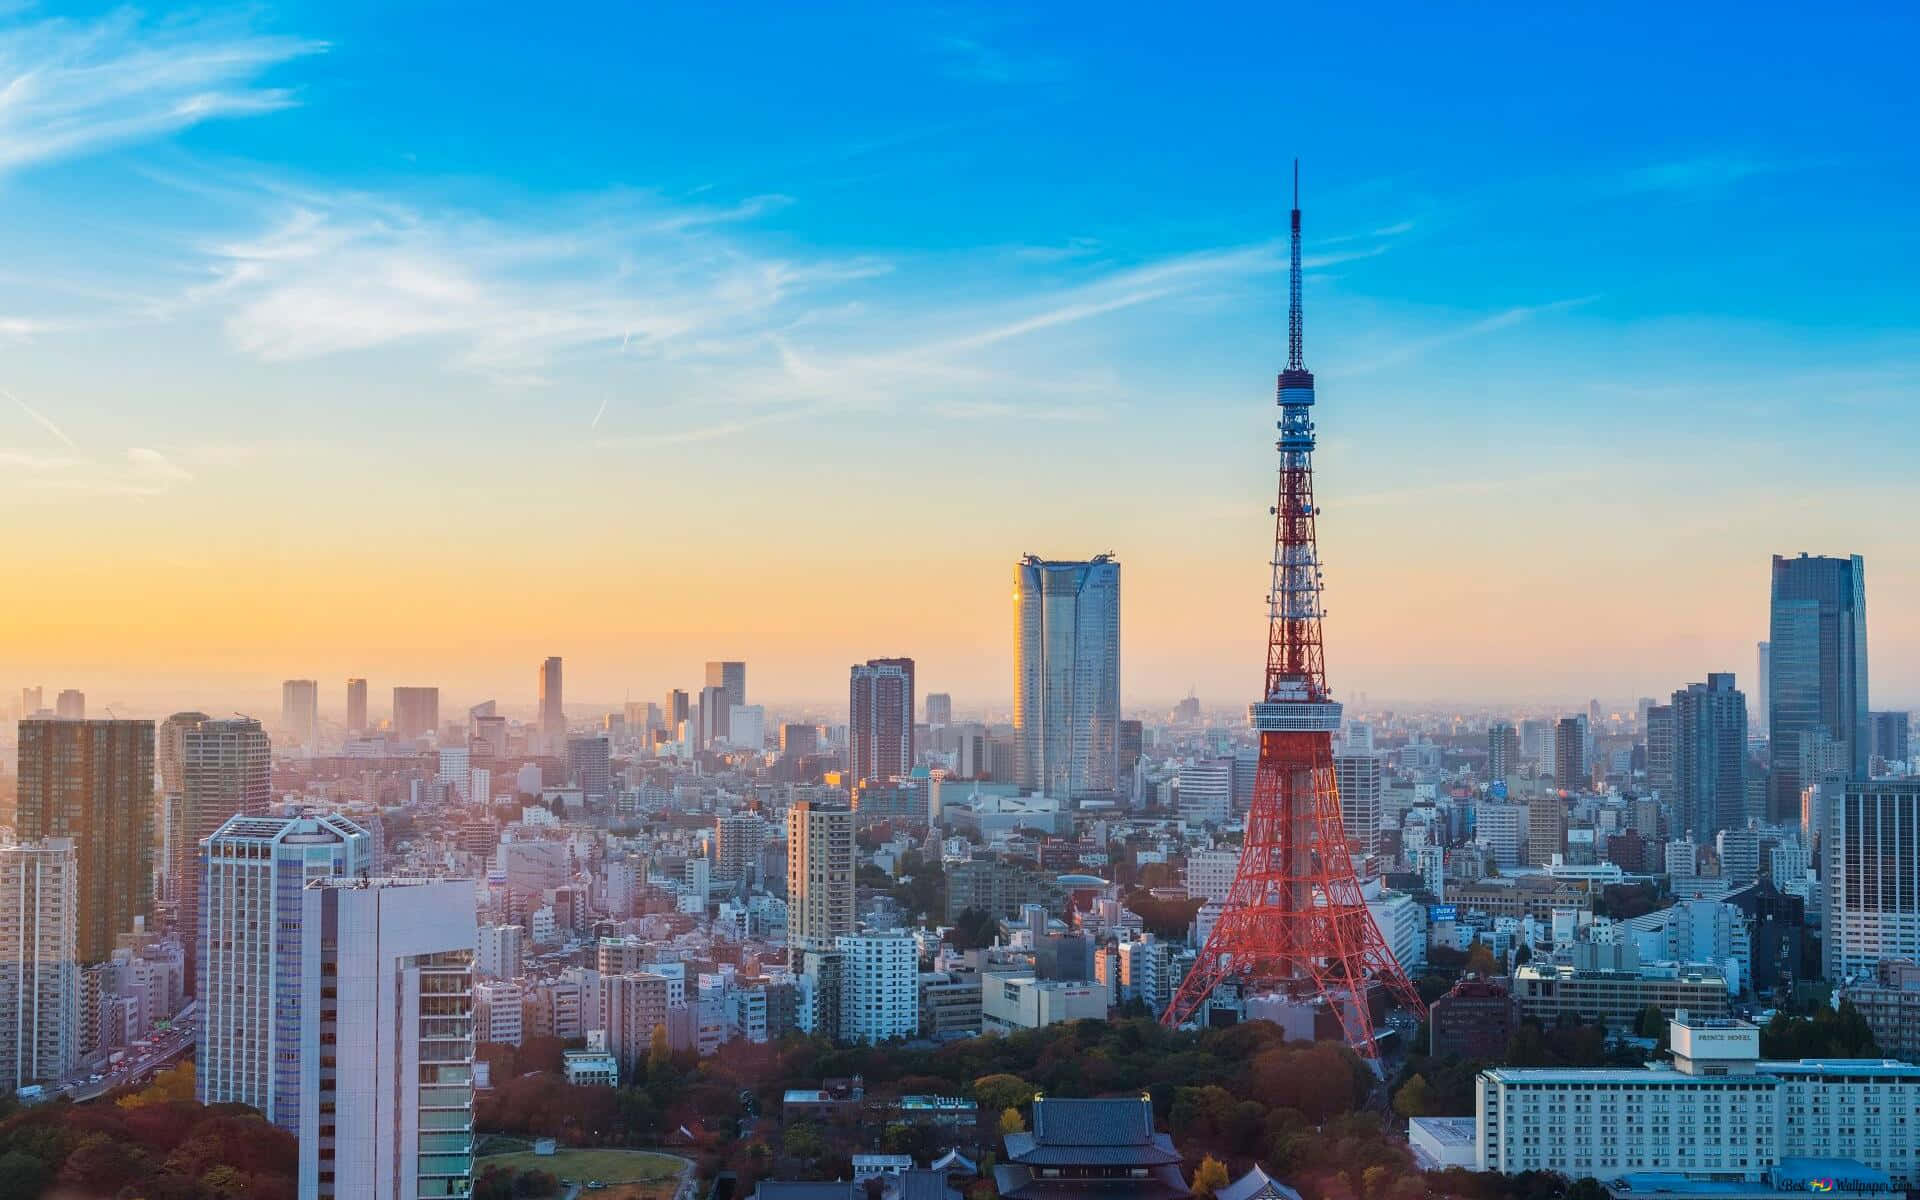 Hintergrundvon Tokyo Tokyo Tower Bei Sonnenaufgang